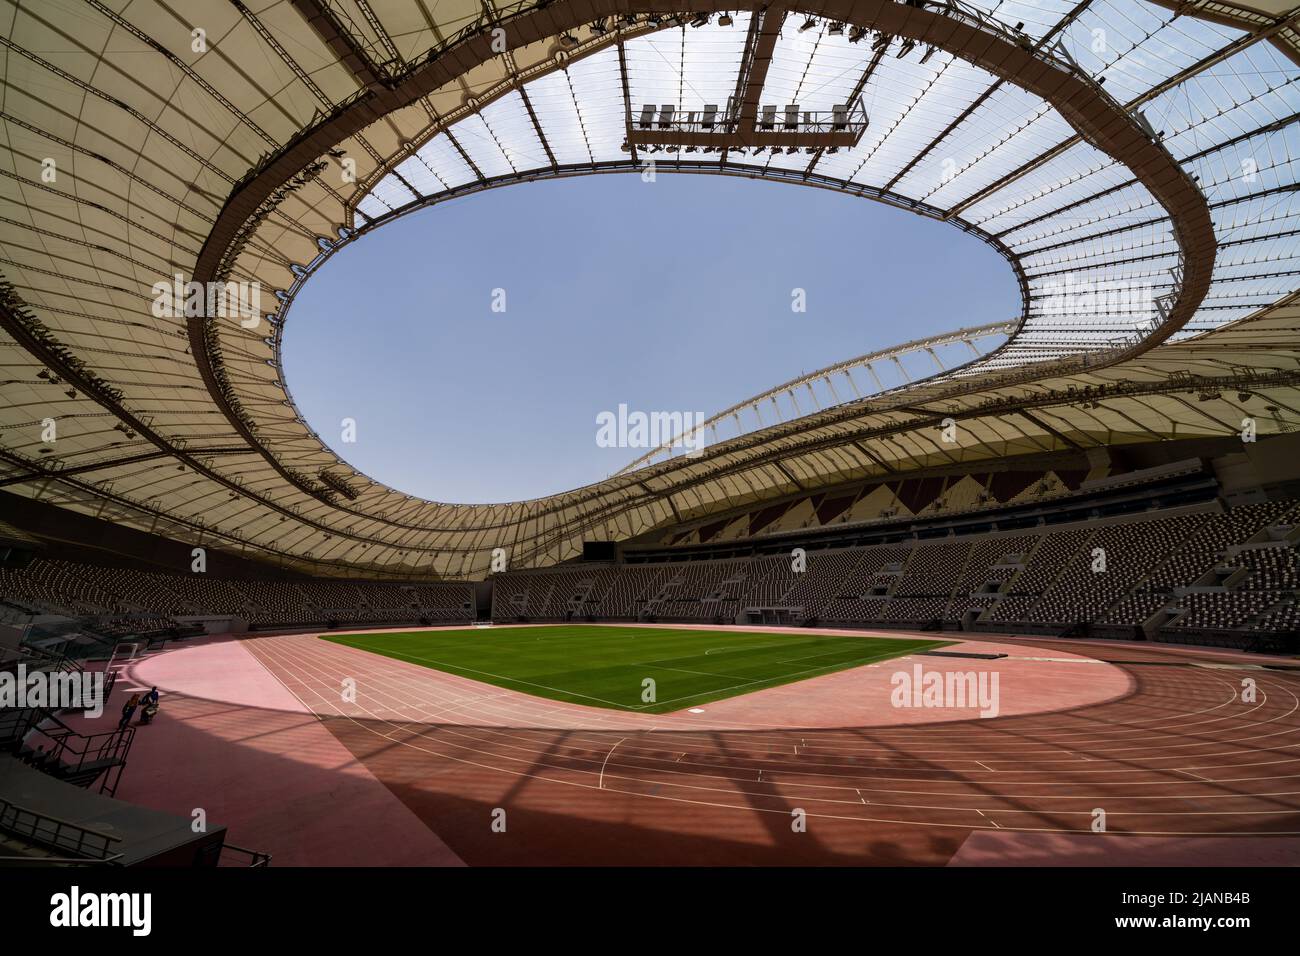 Stade international de Khalifa - l'arène de 40 000 places est la plus ancienne des 8 stades qui accueilleront les matchs de la coupe du monde de la FIFA, Qatar 2022. Banque D'Images